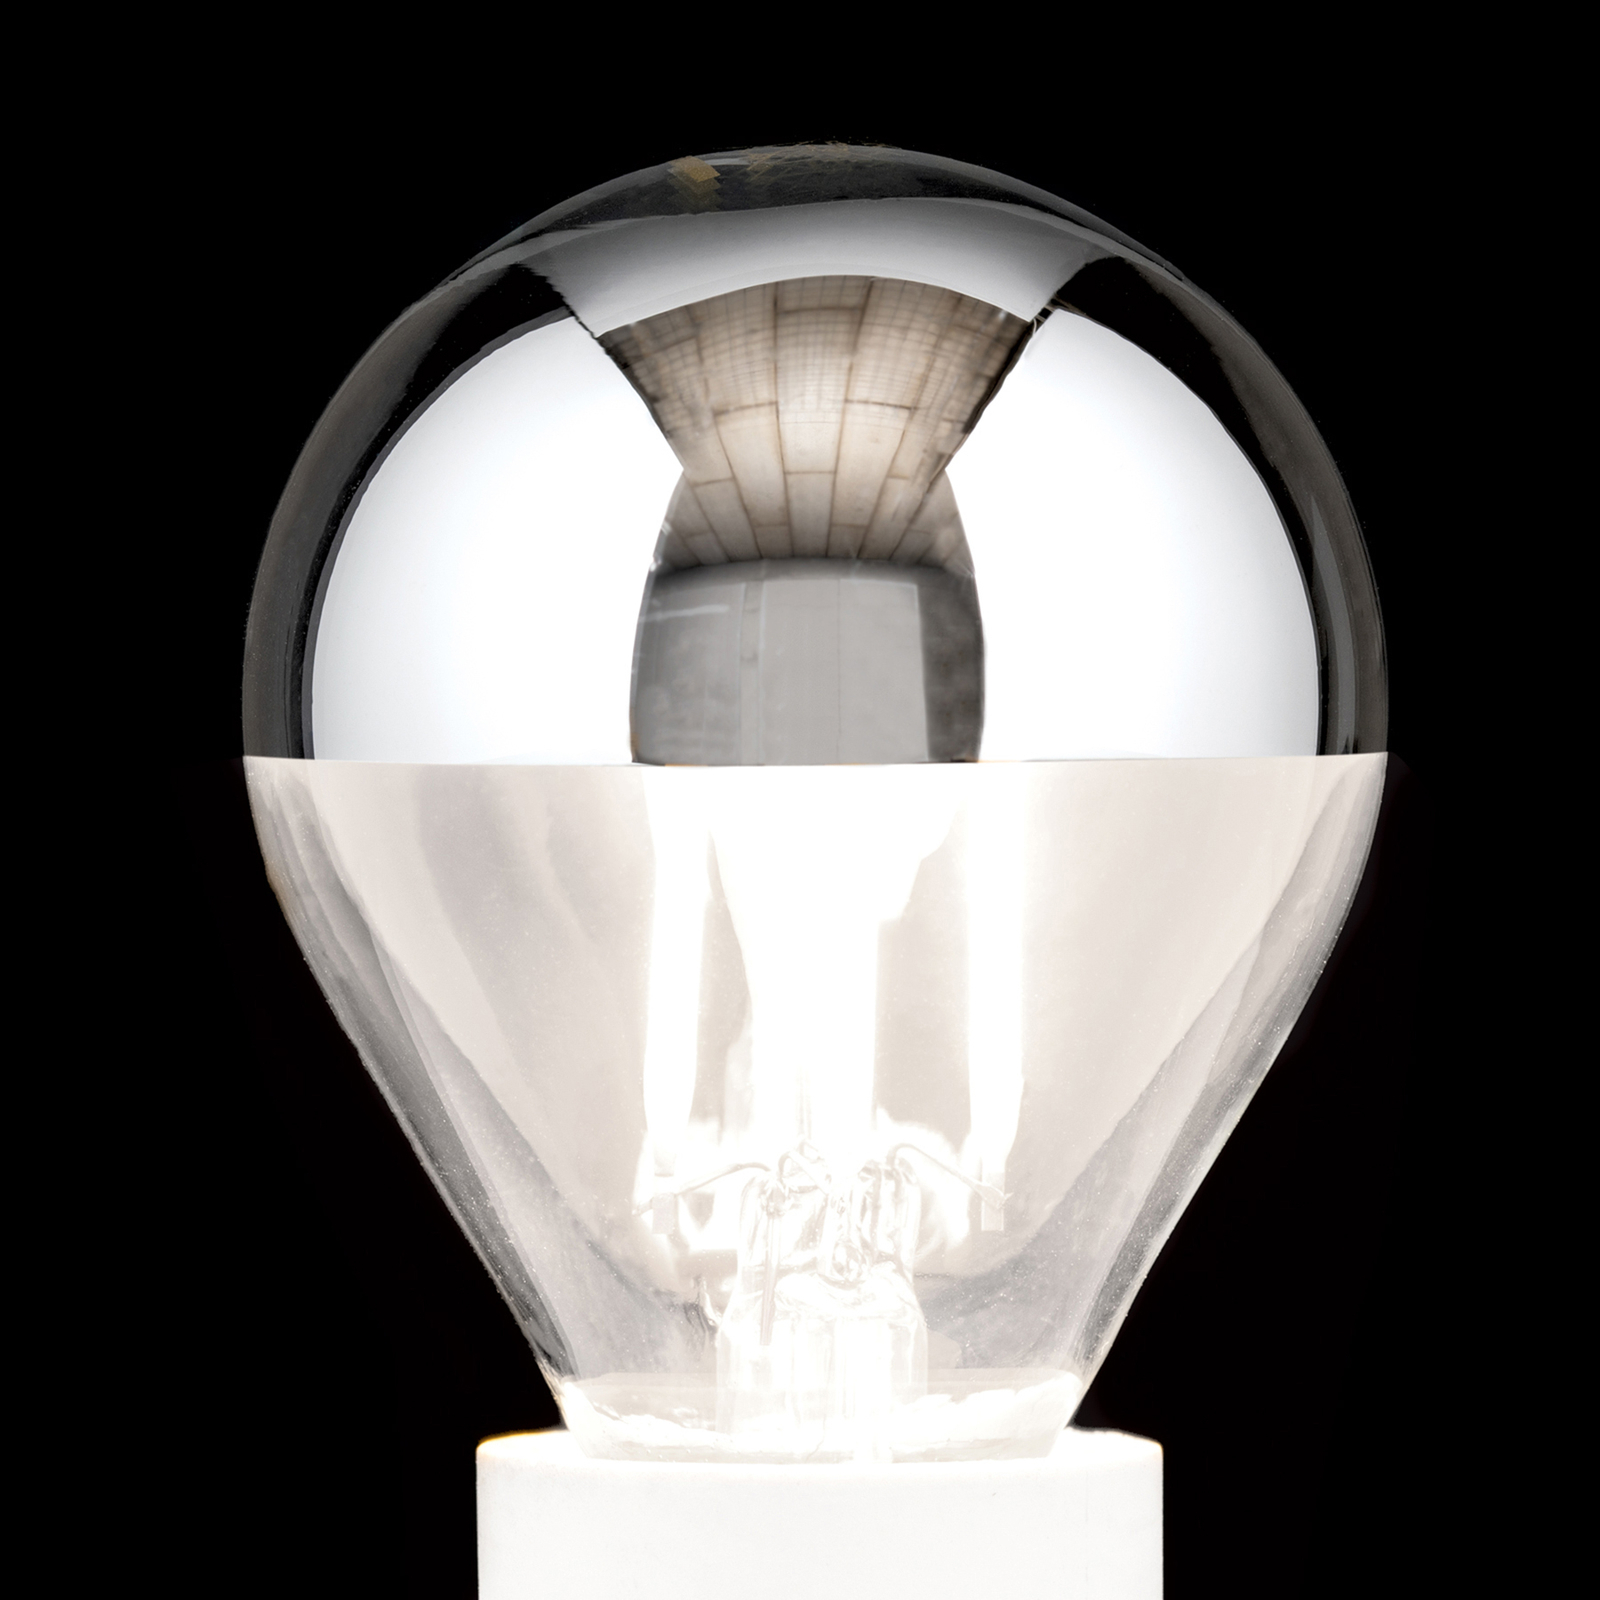 LED kopspiegellamp E14 4 W, warmwit, dimbaar